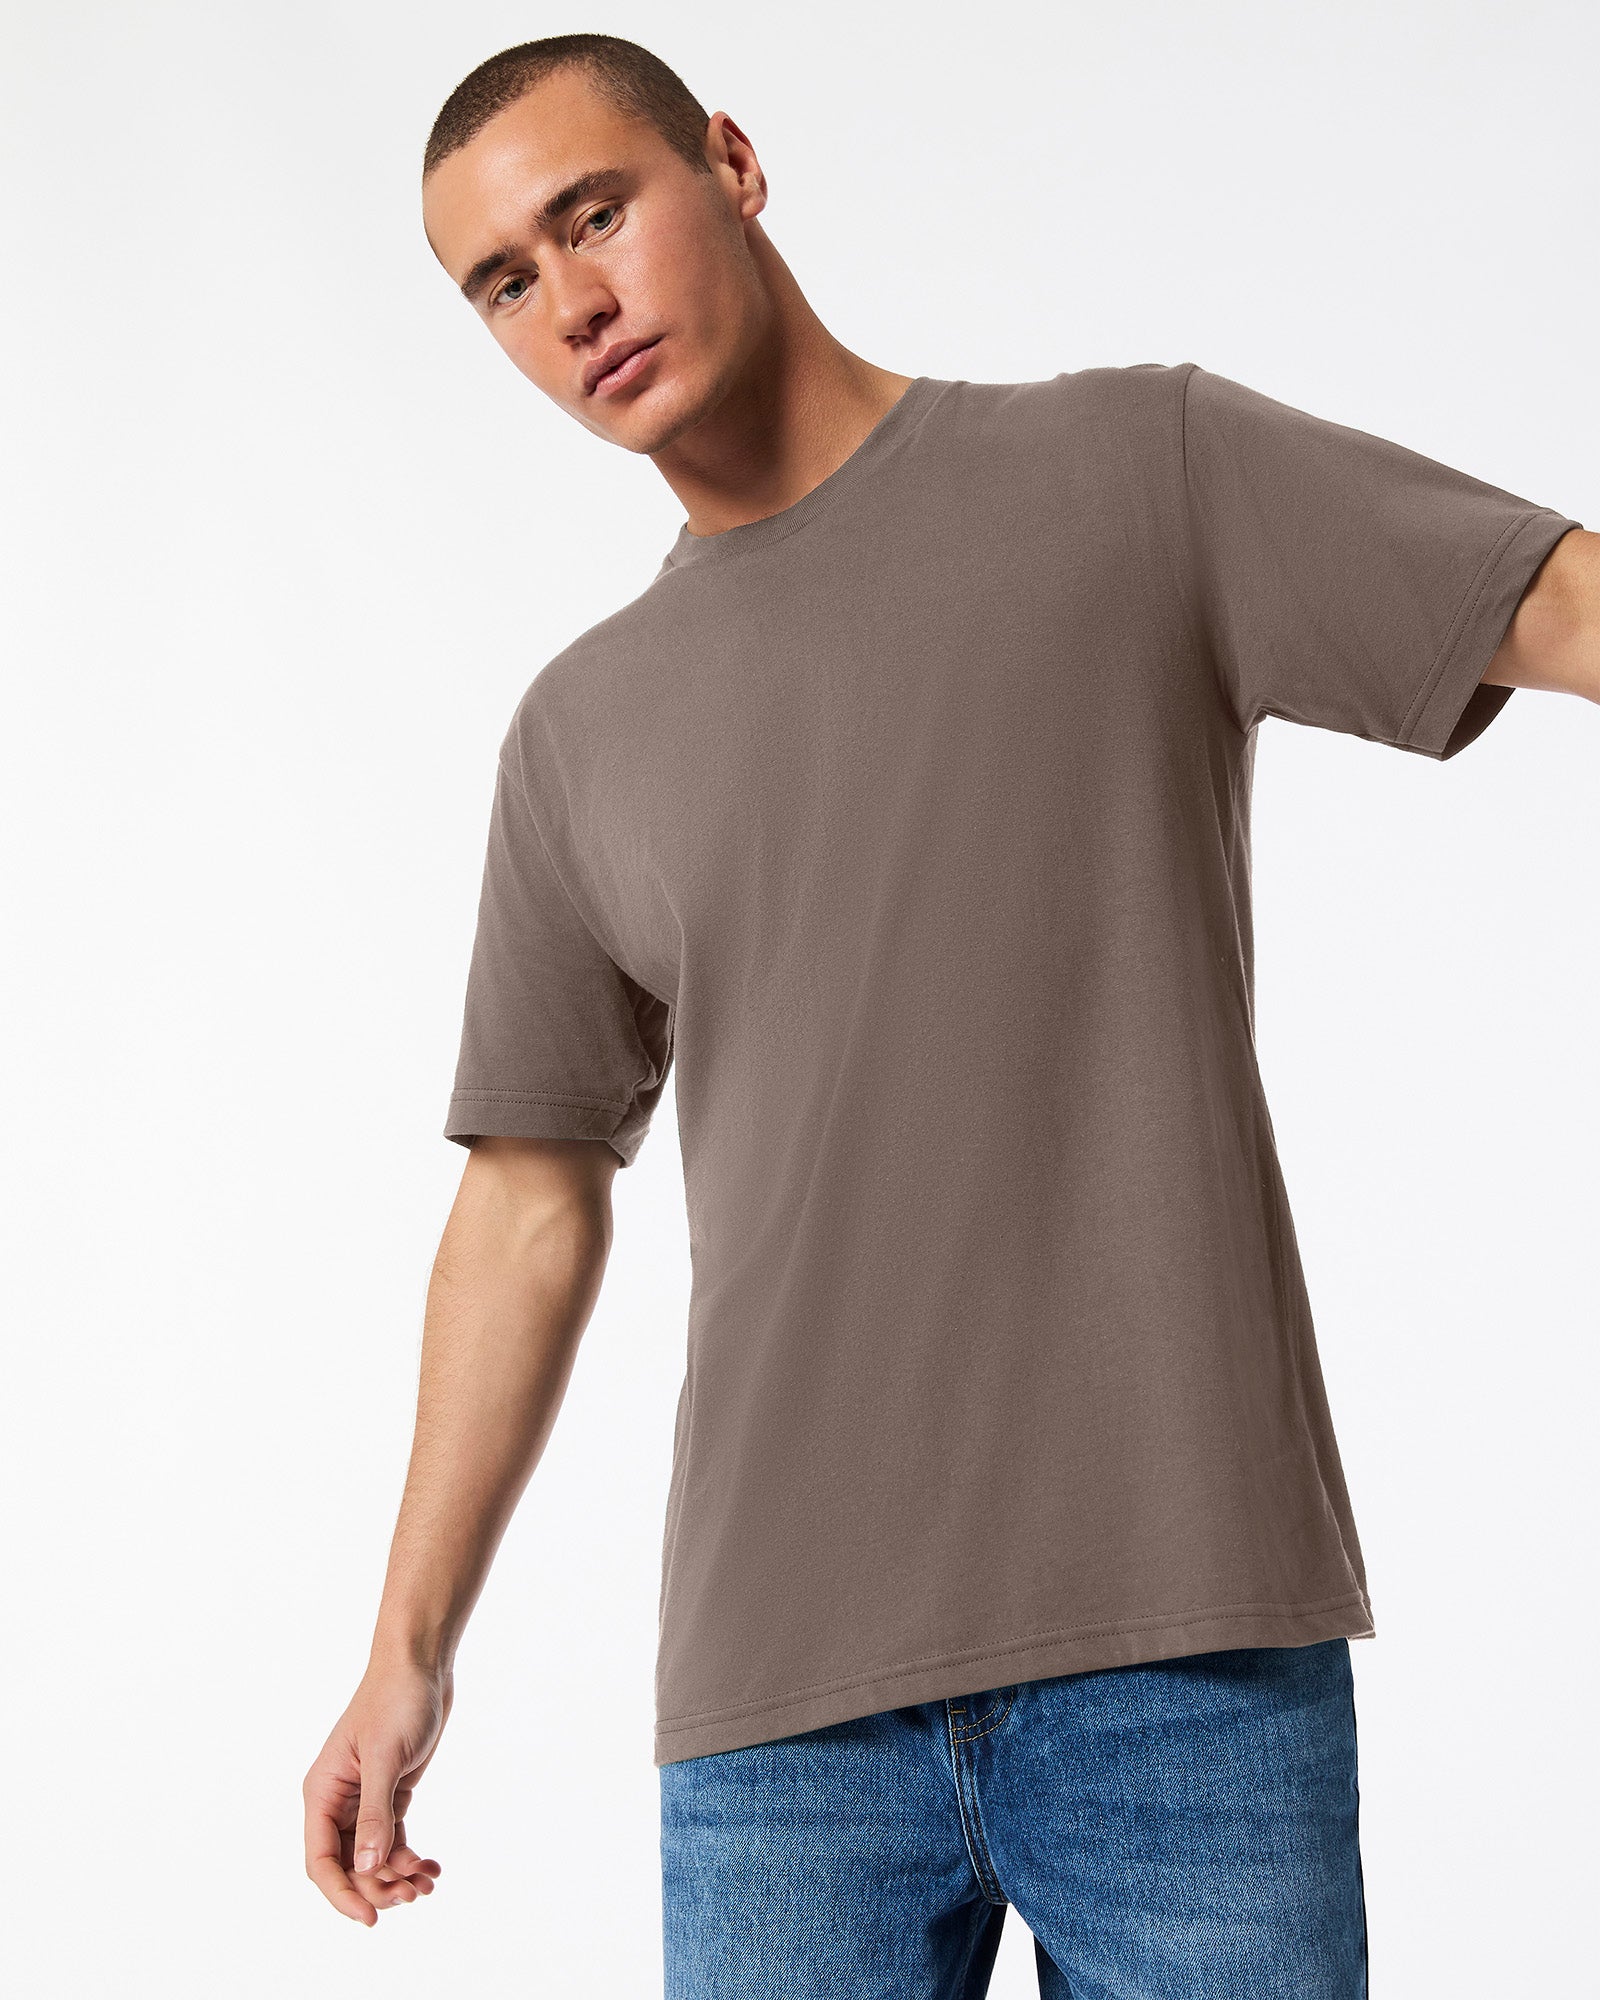 Fine Jersey Unisex Short Sleeve T-Shirt - Brown